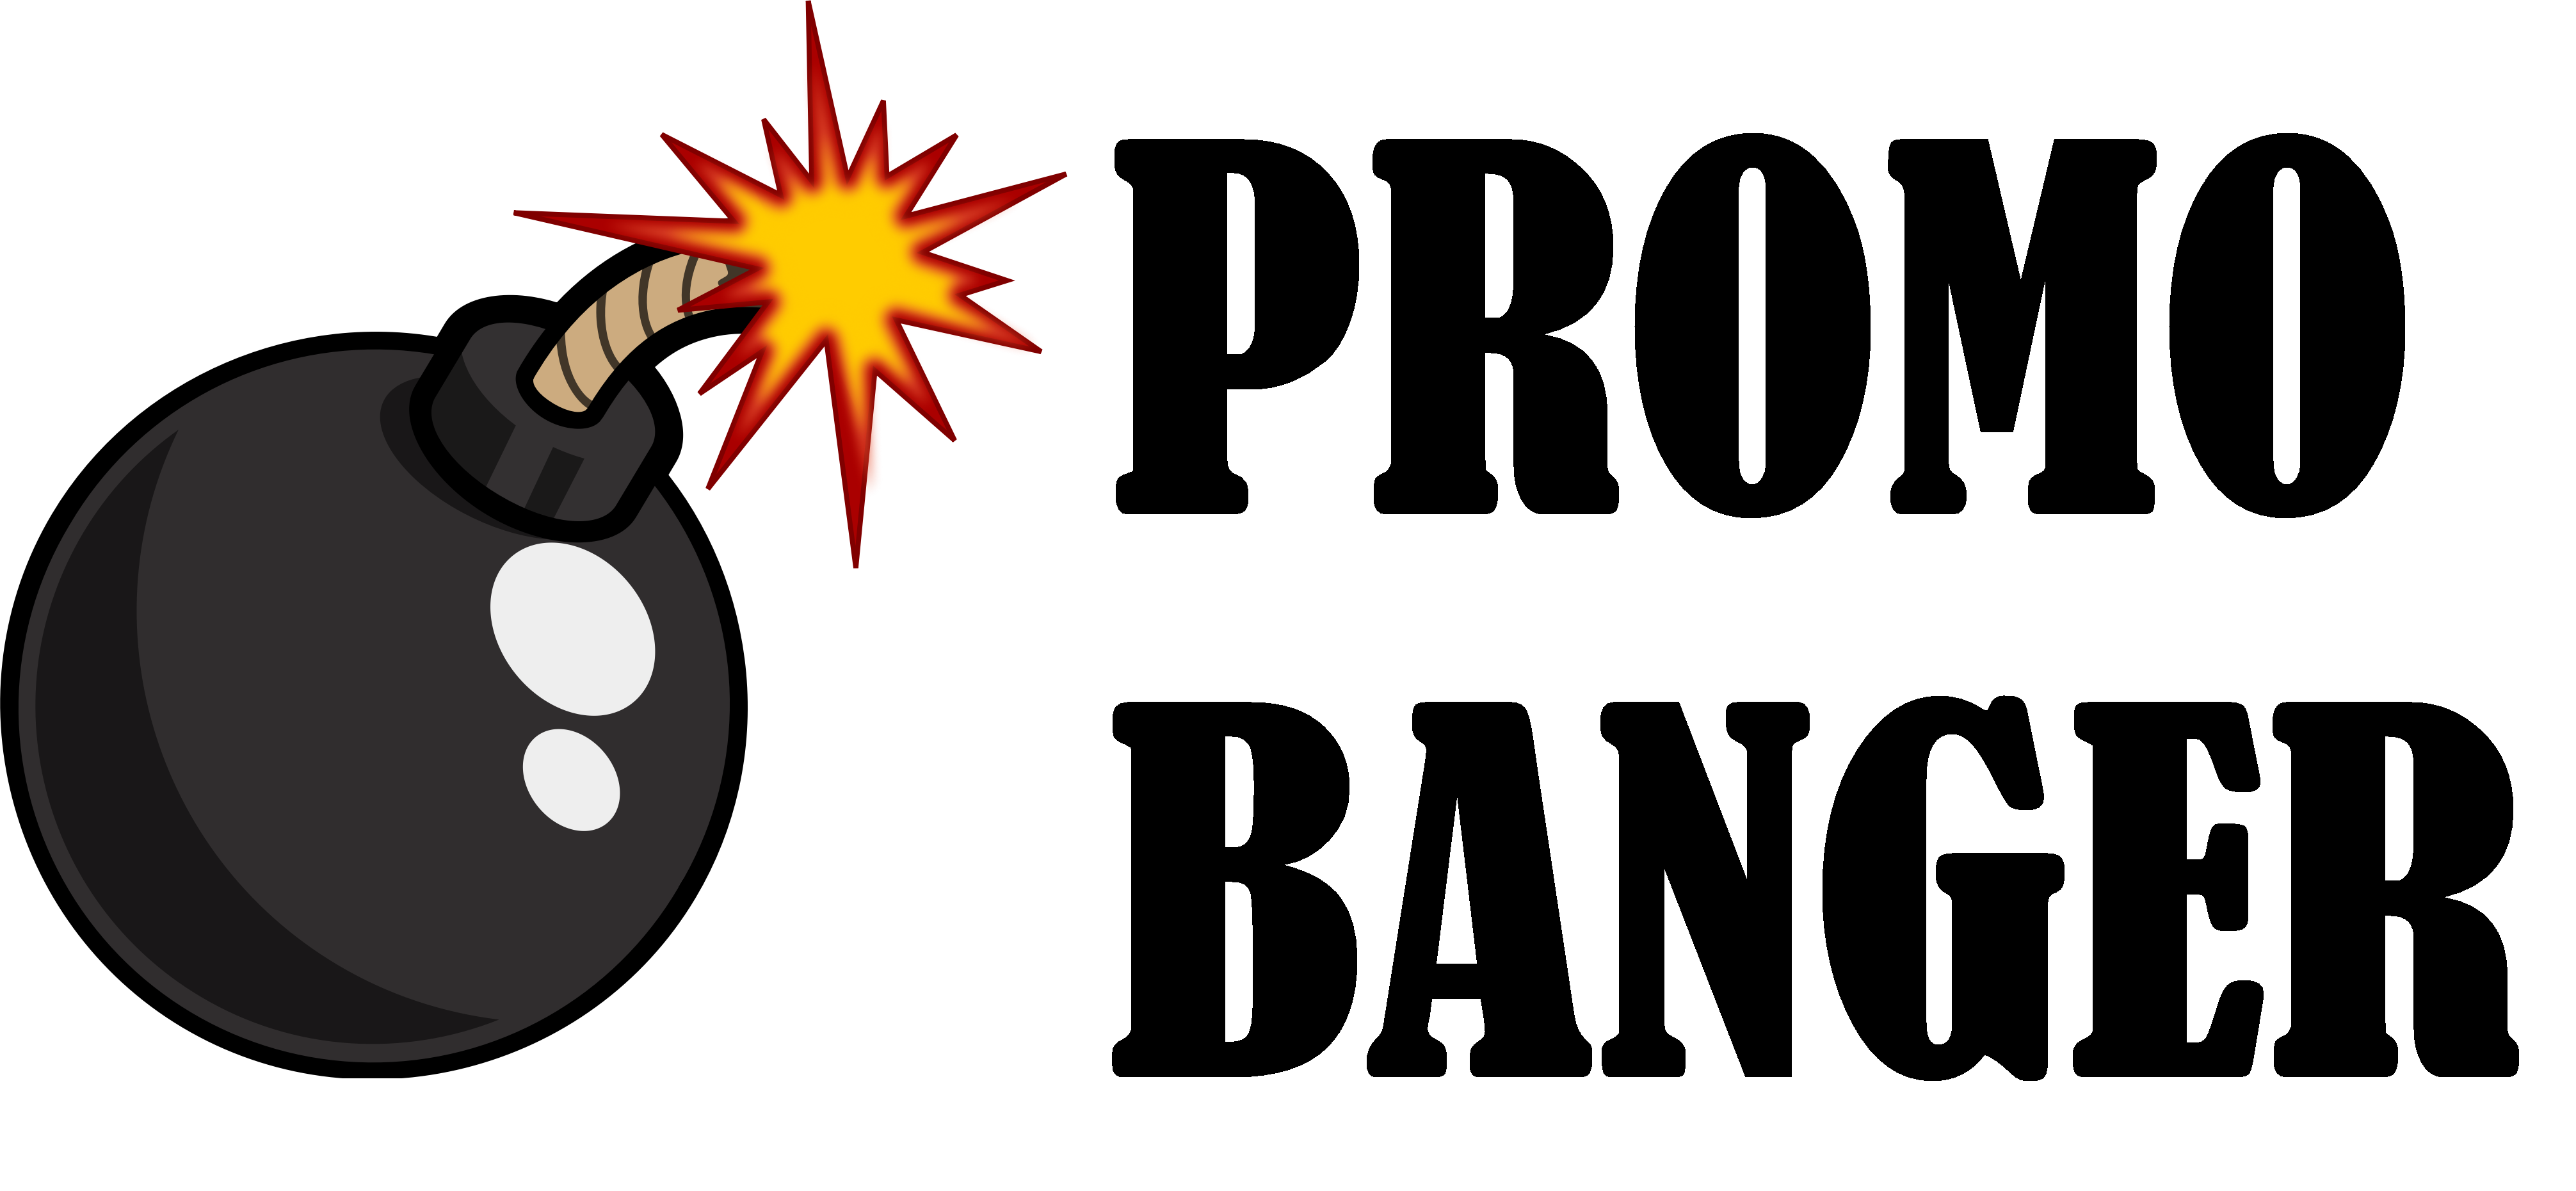 Promo Banger